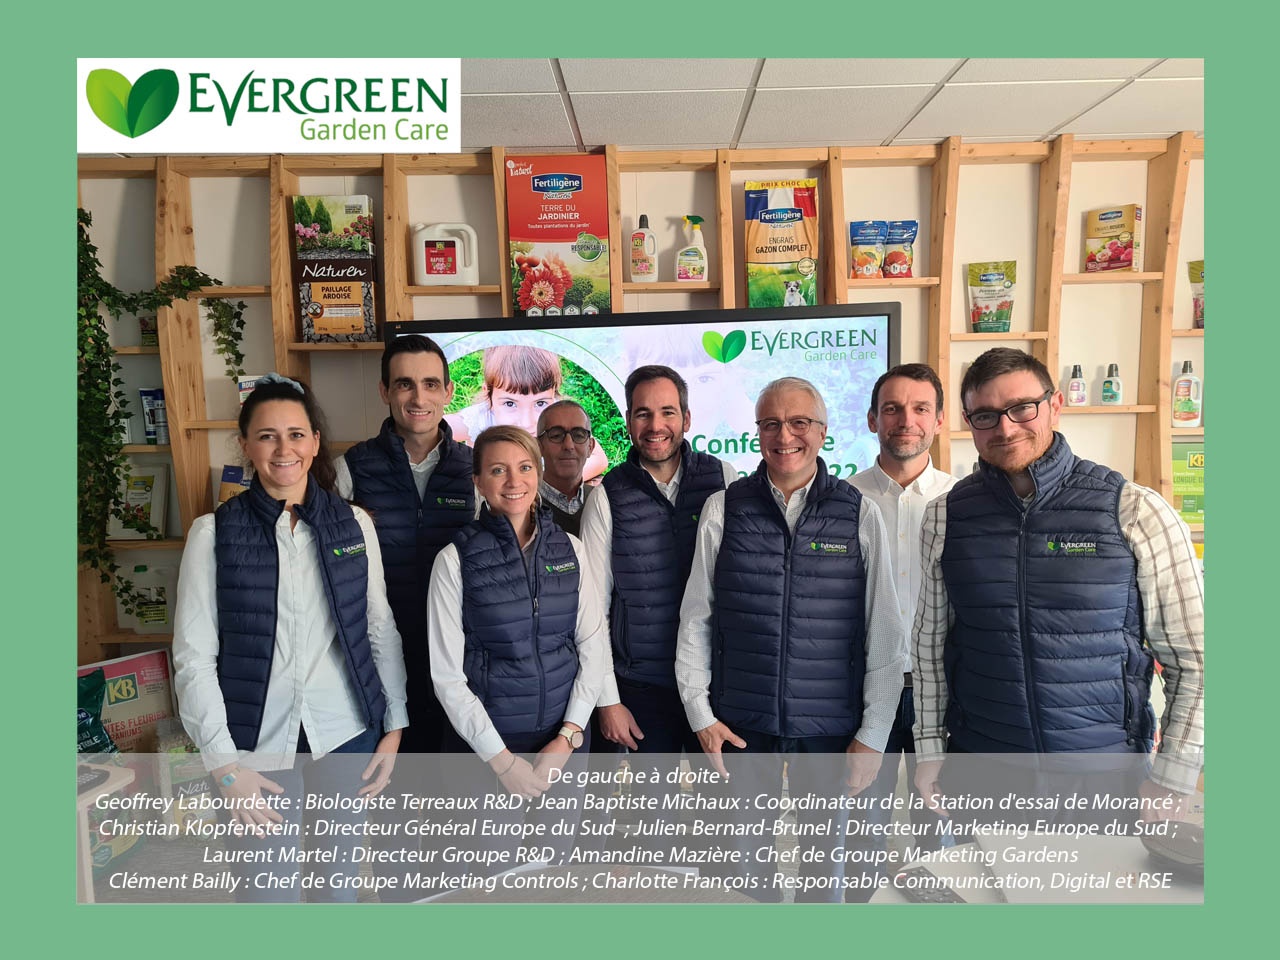 Pour apporter toujours plus de bien-être, Evergreen Garden Care axe sa stratégie autour de l’innovation et du développement durable